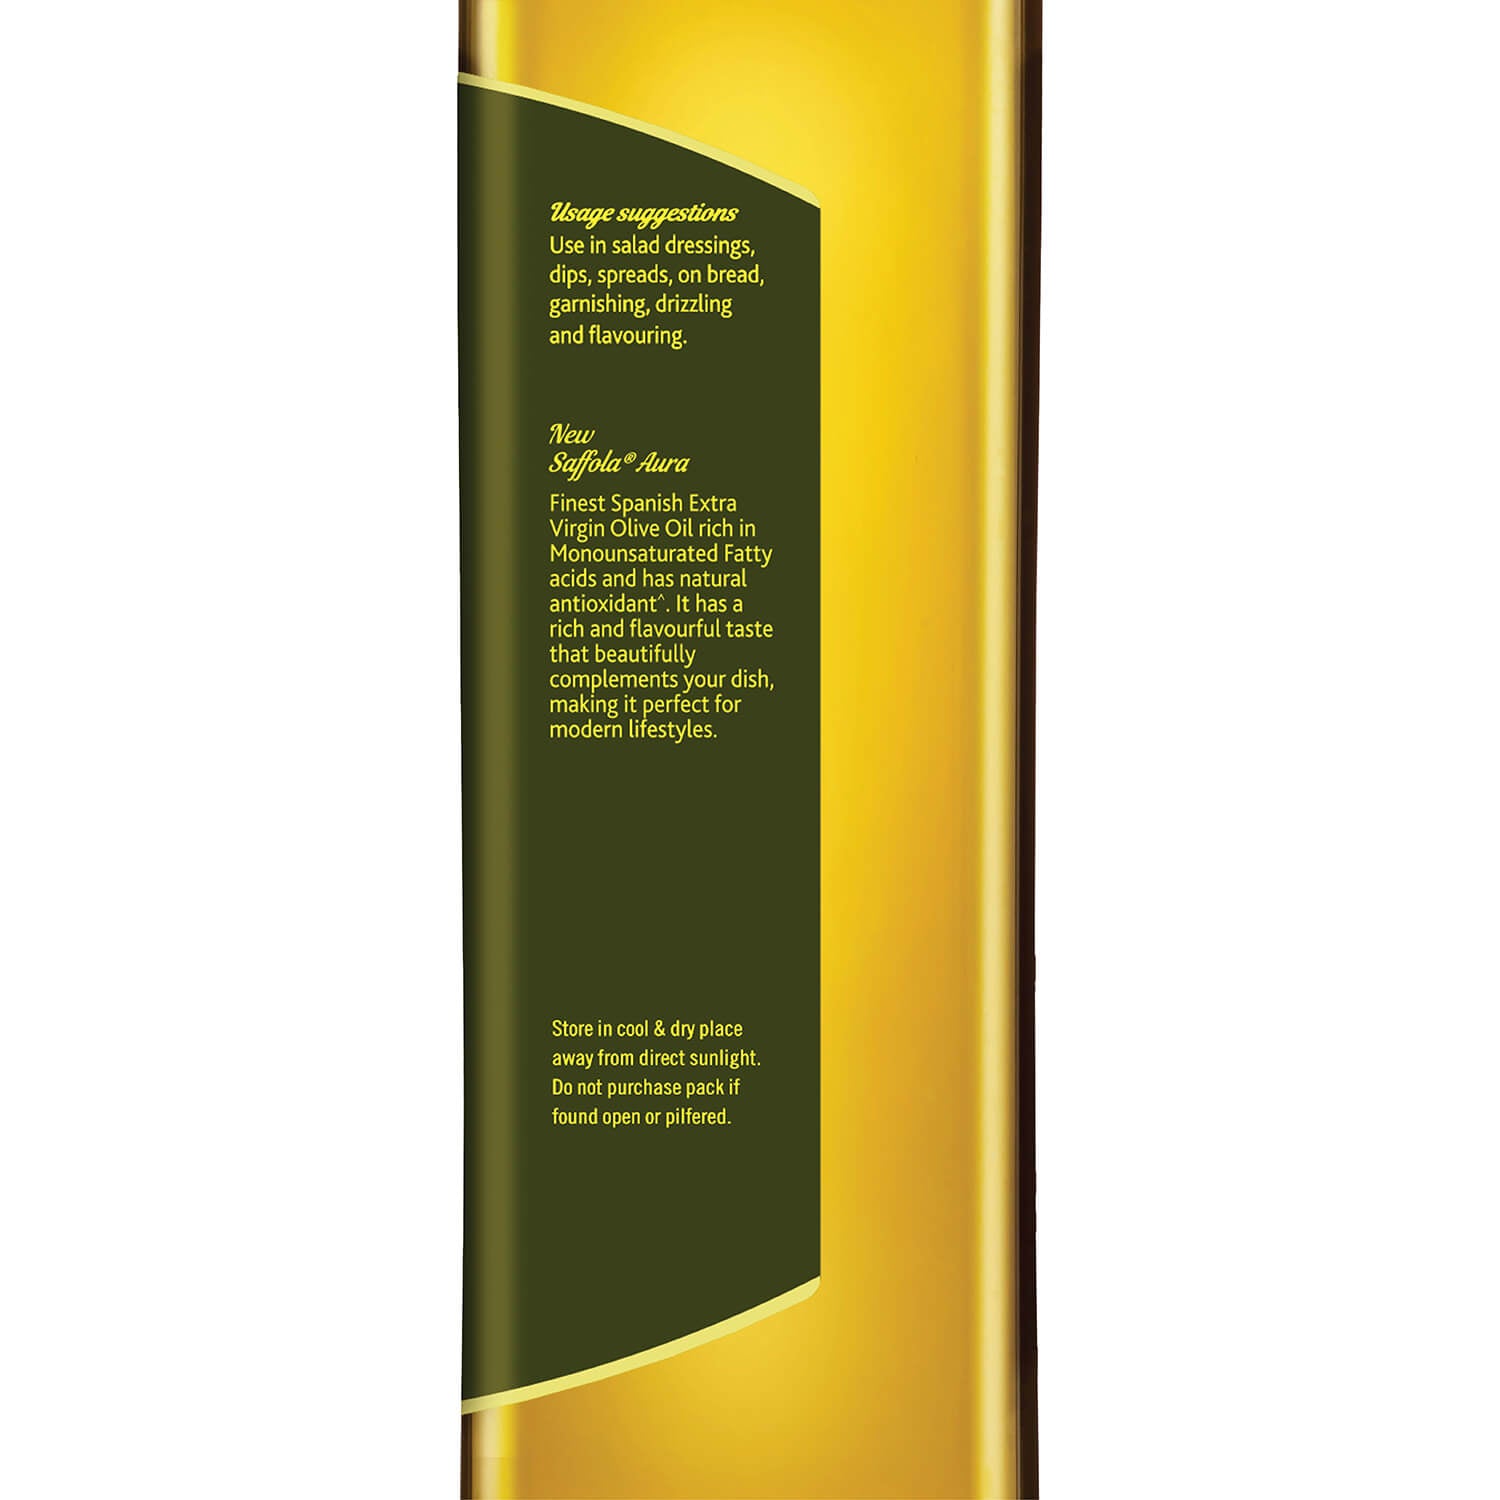 Saffola Aura Extra Virgin Olive Oil - 500ml